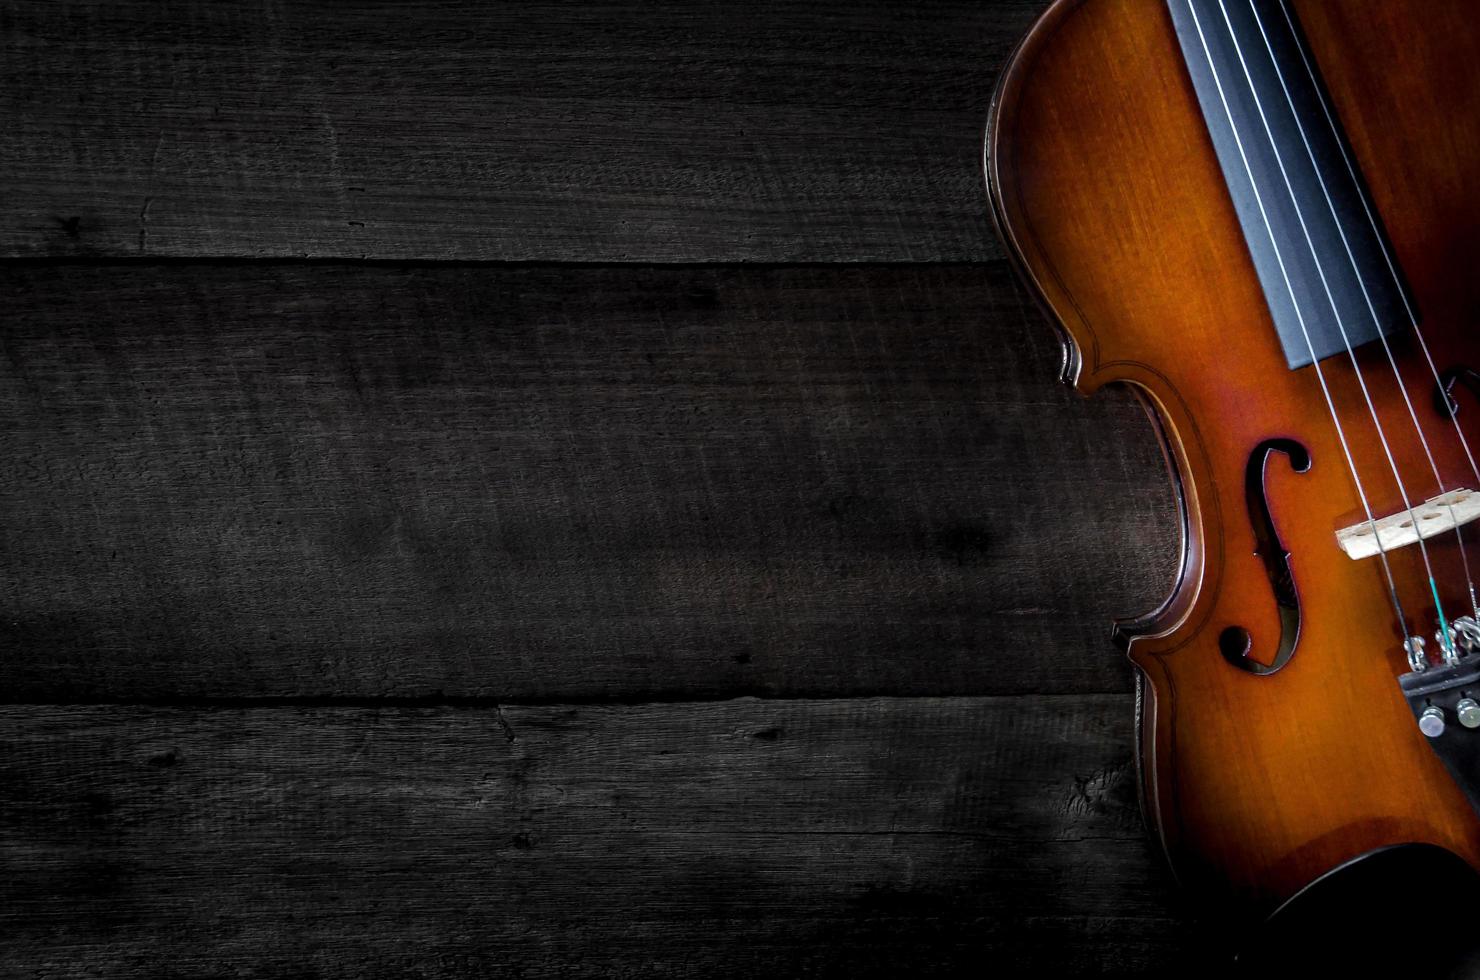 die Geige auf dem Tisch, Nahaufnahme der Geige auf dem Holzboden foto